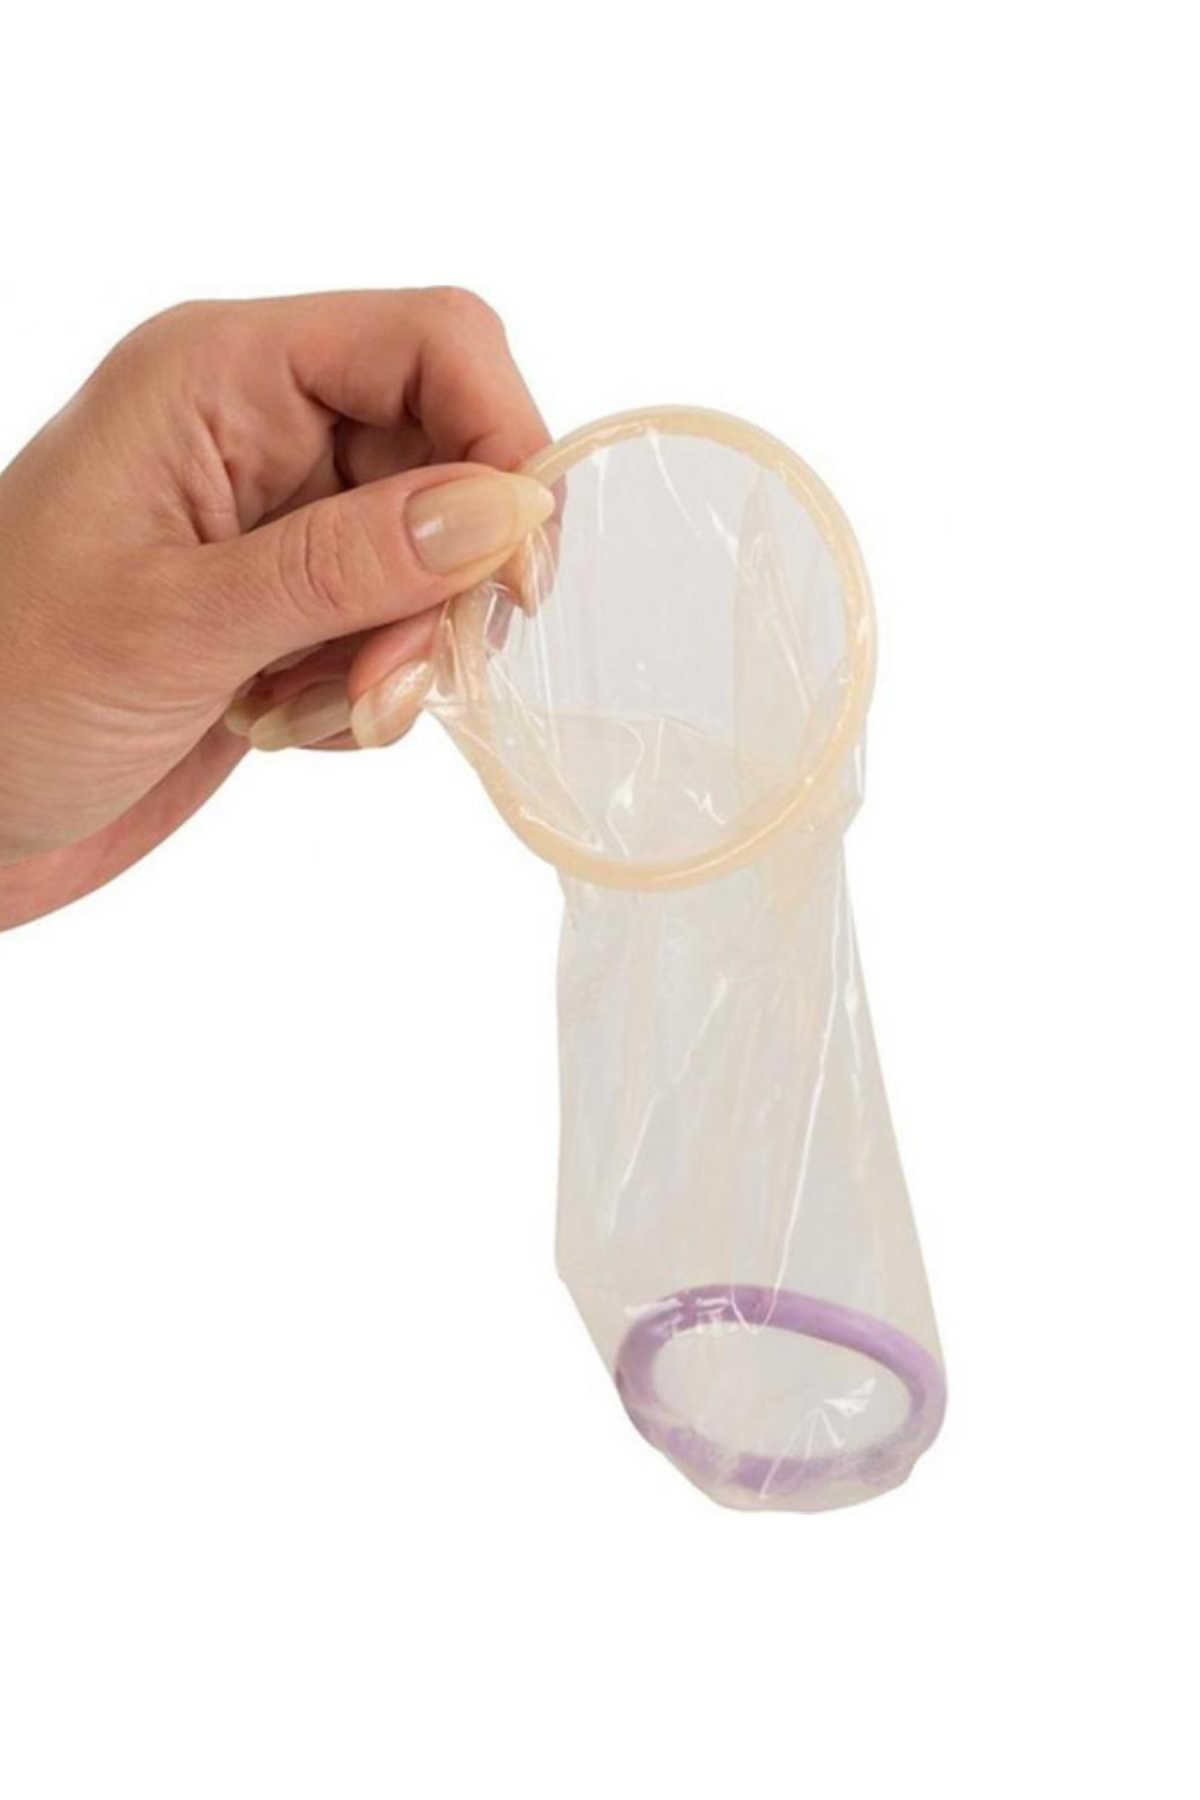 Ormelle female condoms | 5 Pack